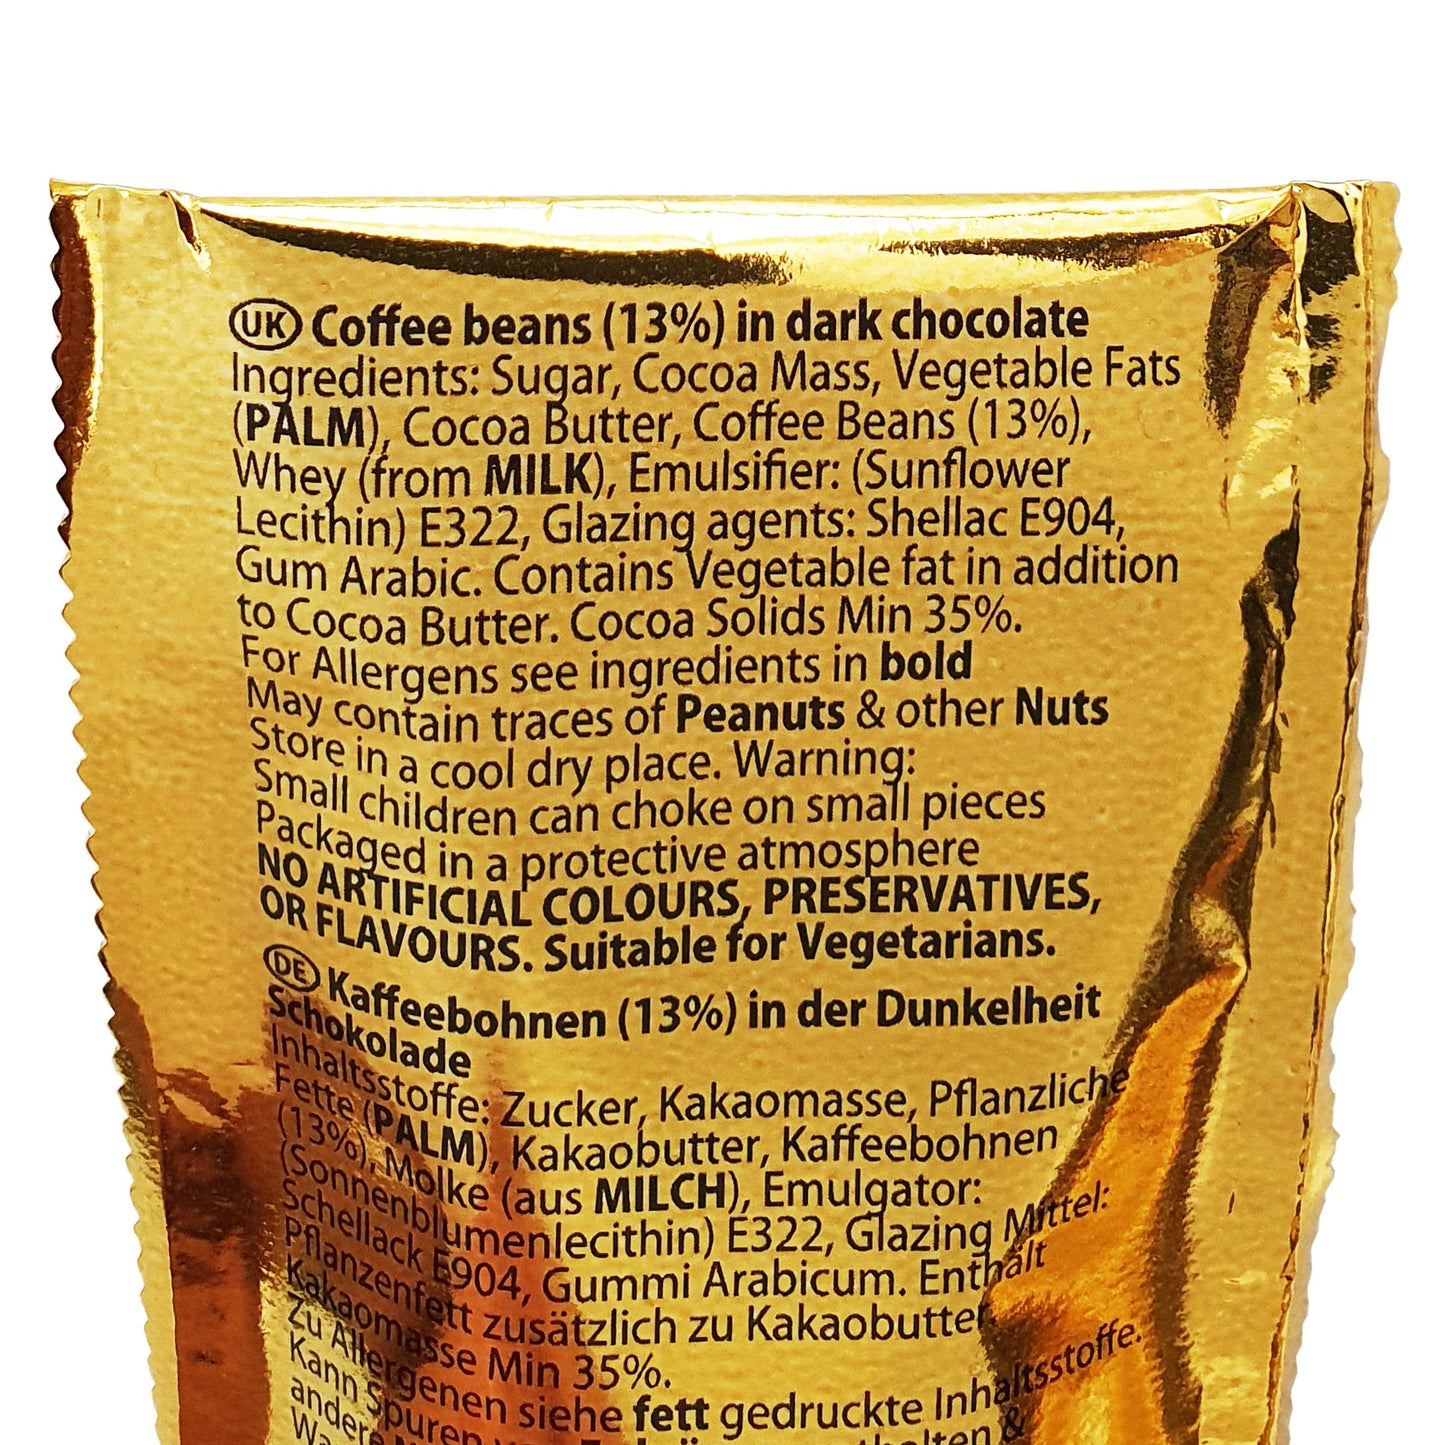 DC Americanos coffee beans in dark chocolatae 36 x 27g shot case